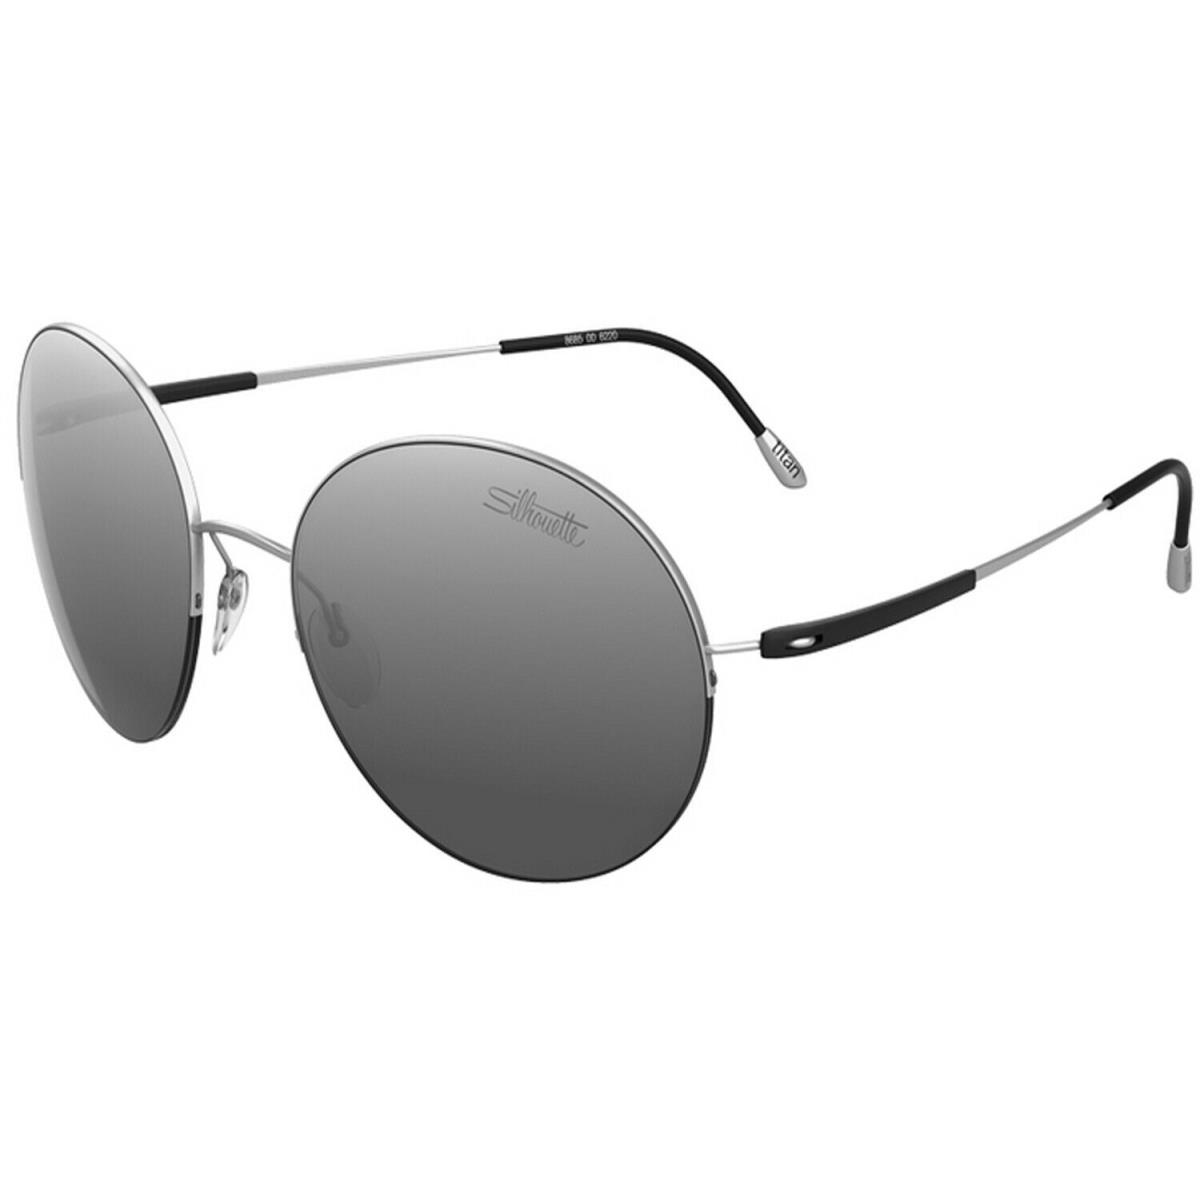 Silhouette Sunglasses Adventurer 8685 54/18/135 Titanium Silver 8685-6220